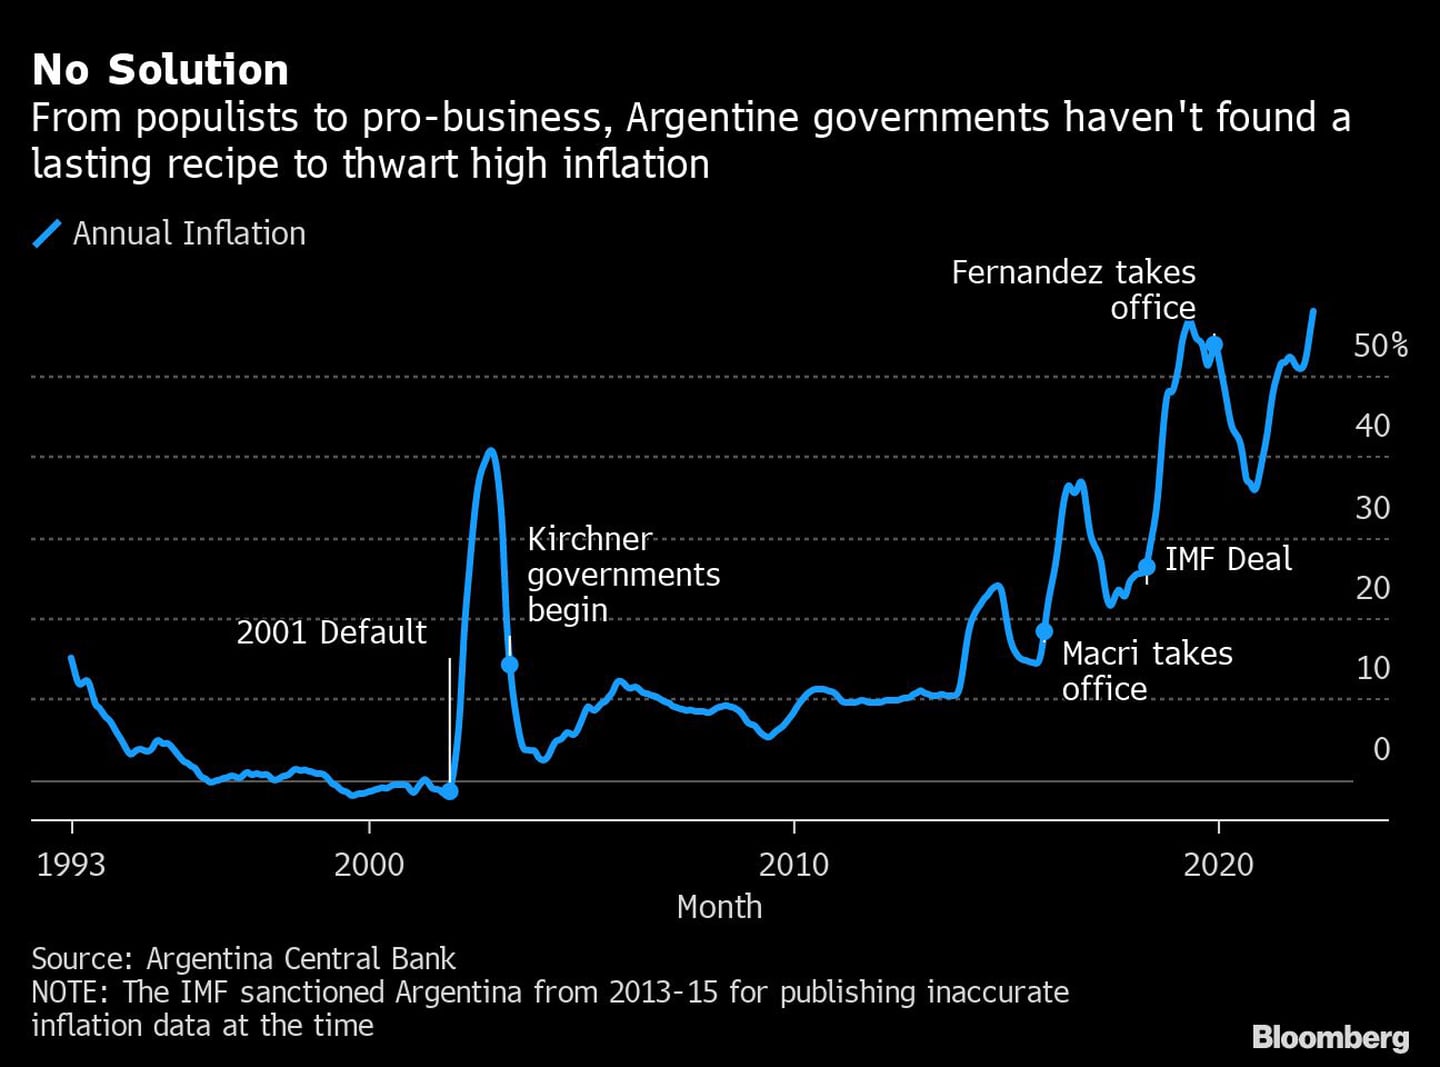 Przyjazne ludziom i rynkowi rządy argentyńskie nie znalazły trwałego rozwiązania obniżenia cen pdfd